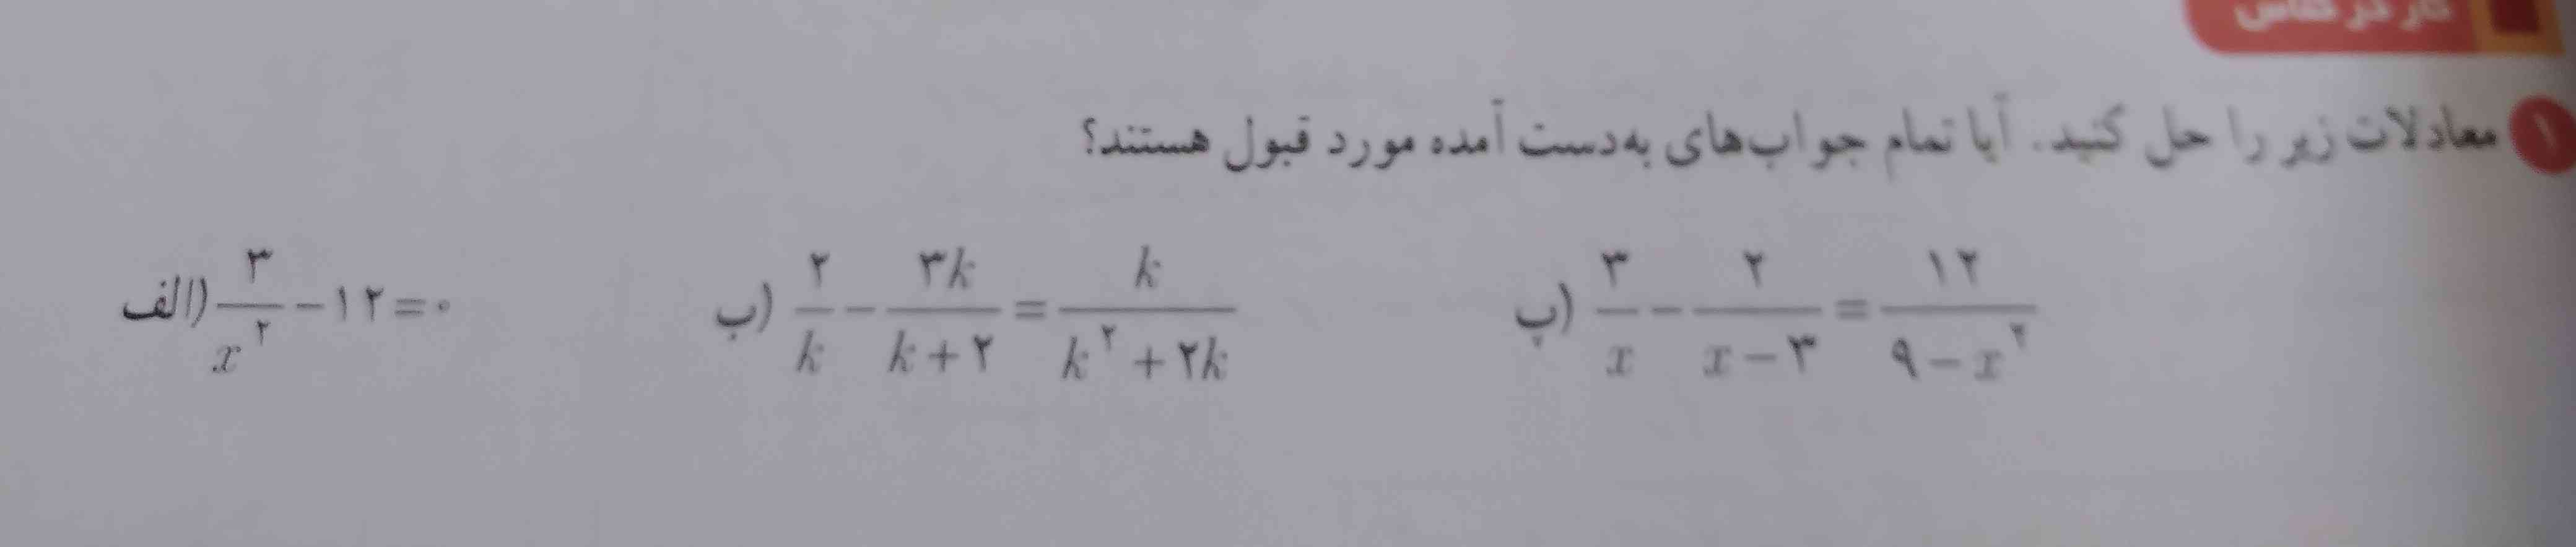 معادلات زیرا حل کنید
